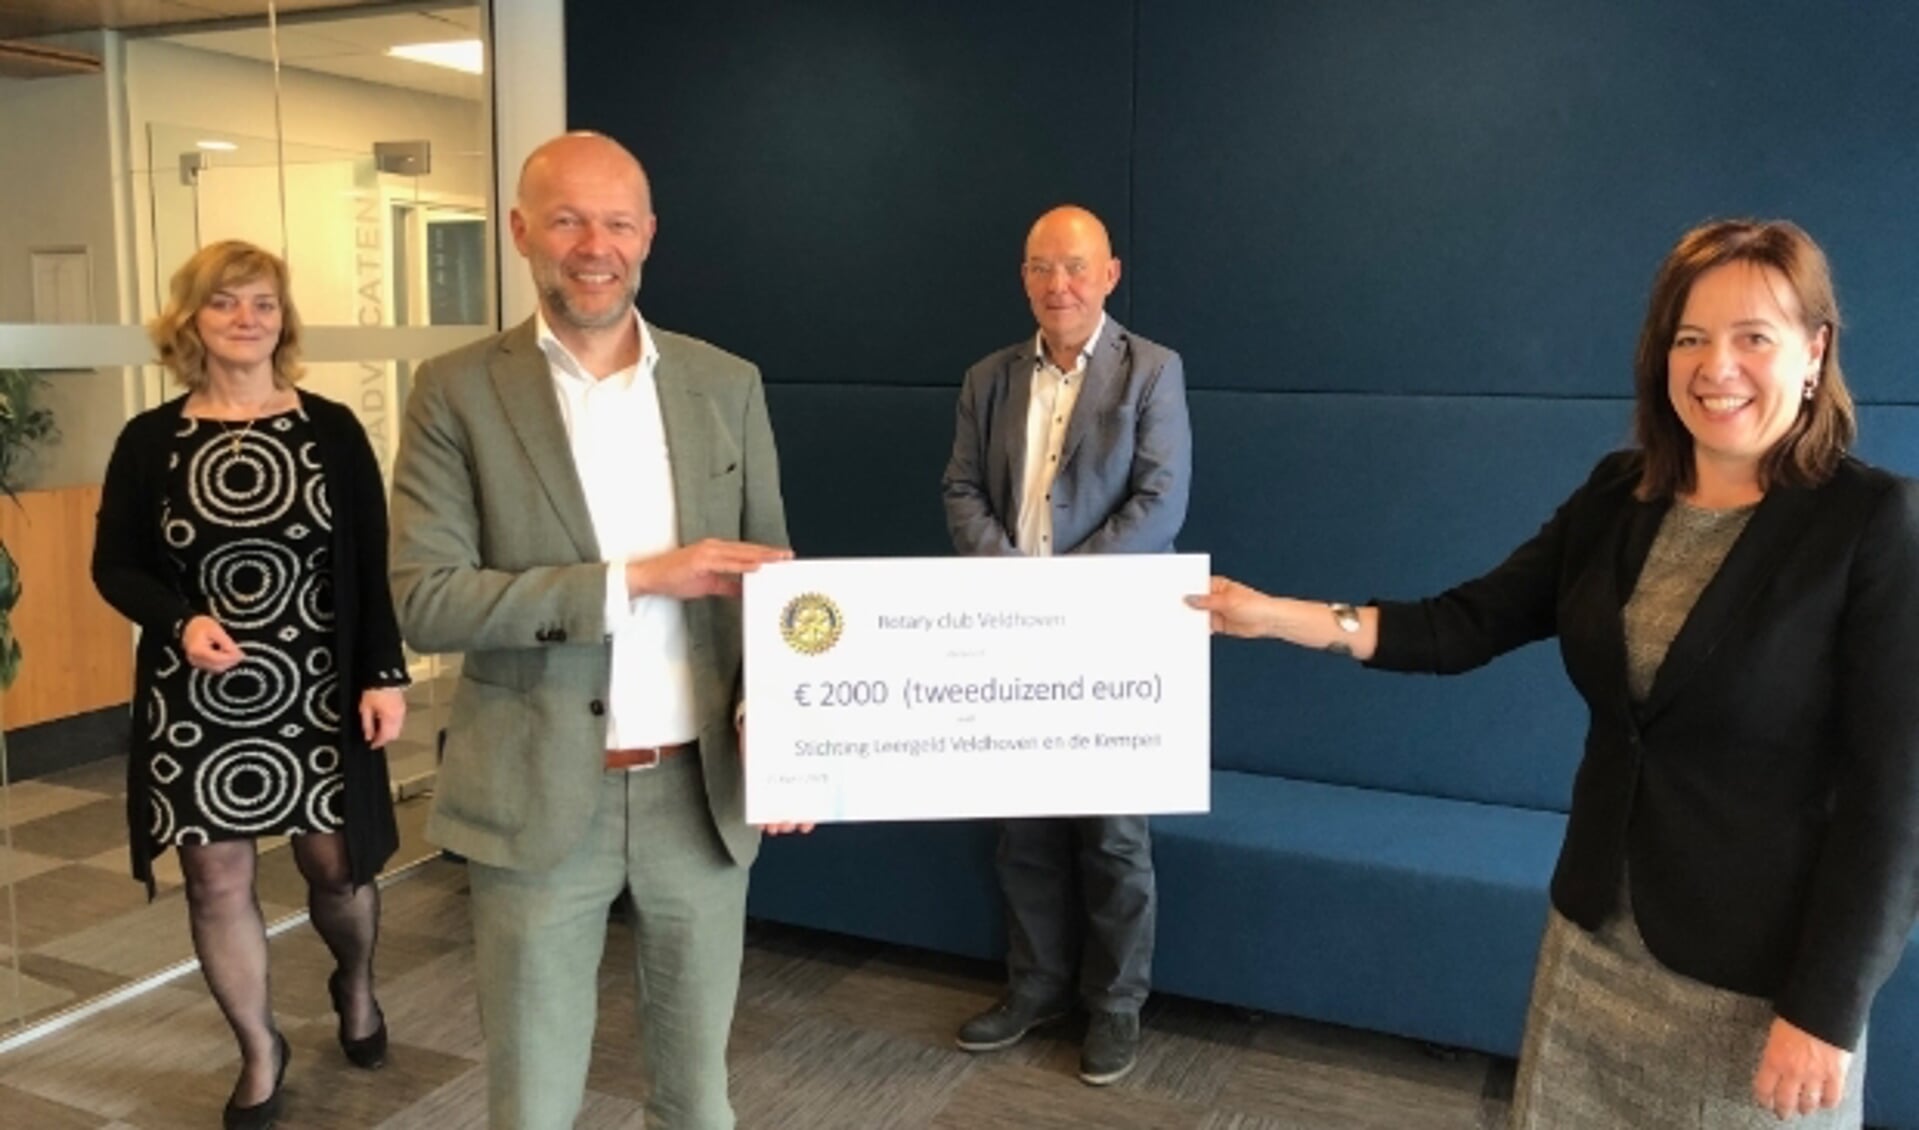 Erik Vannisselroy, voorzitter van Rotary Veldhoven en Angela van Gerwen, voorzitter van Stichting Leergeld, tonen met trots de cheque.